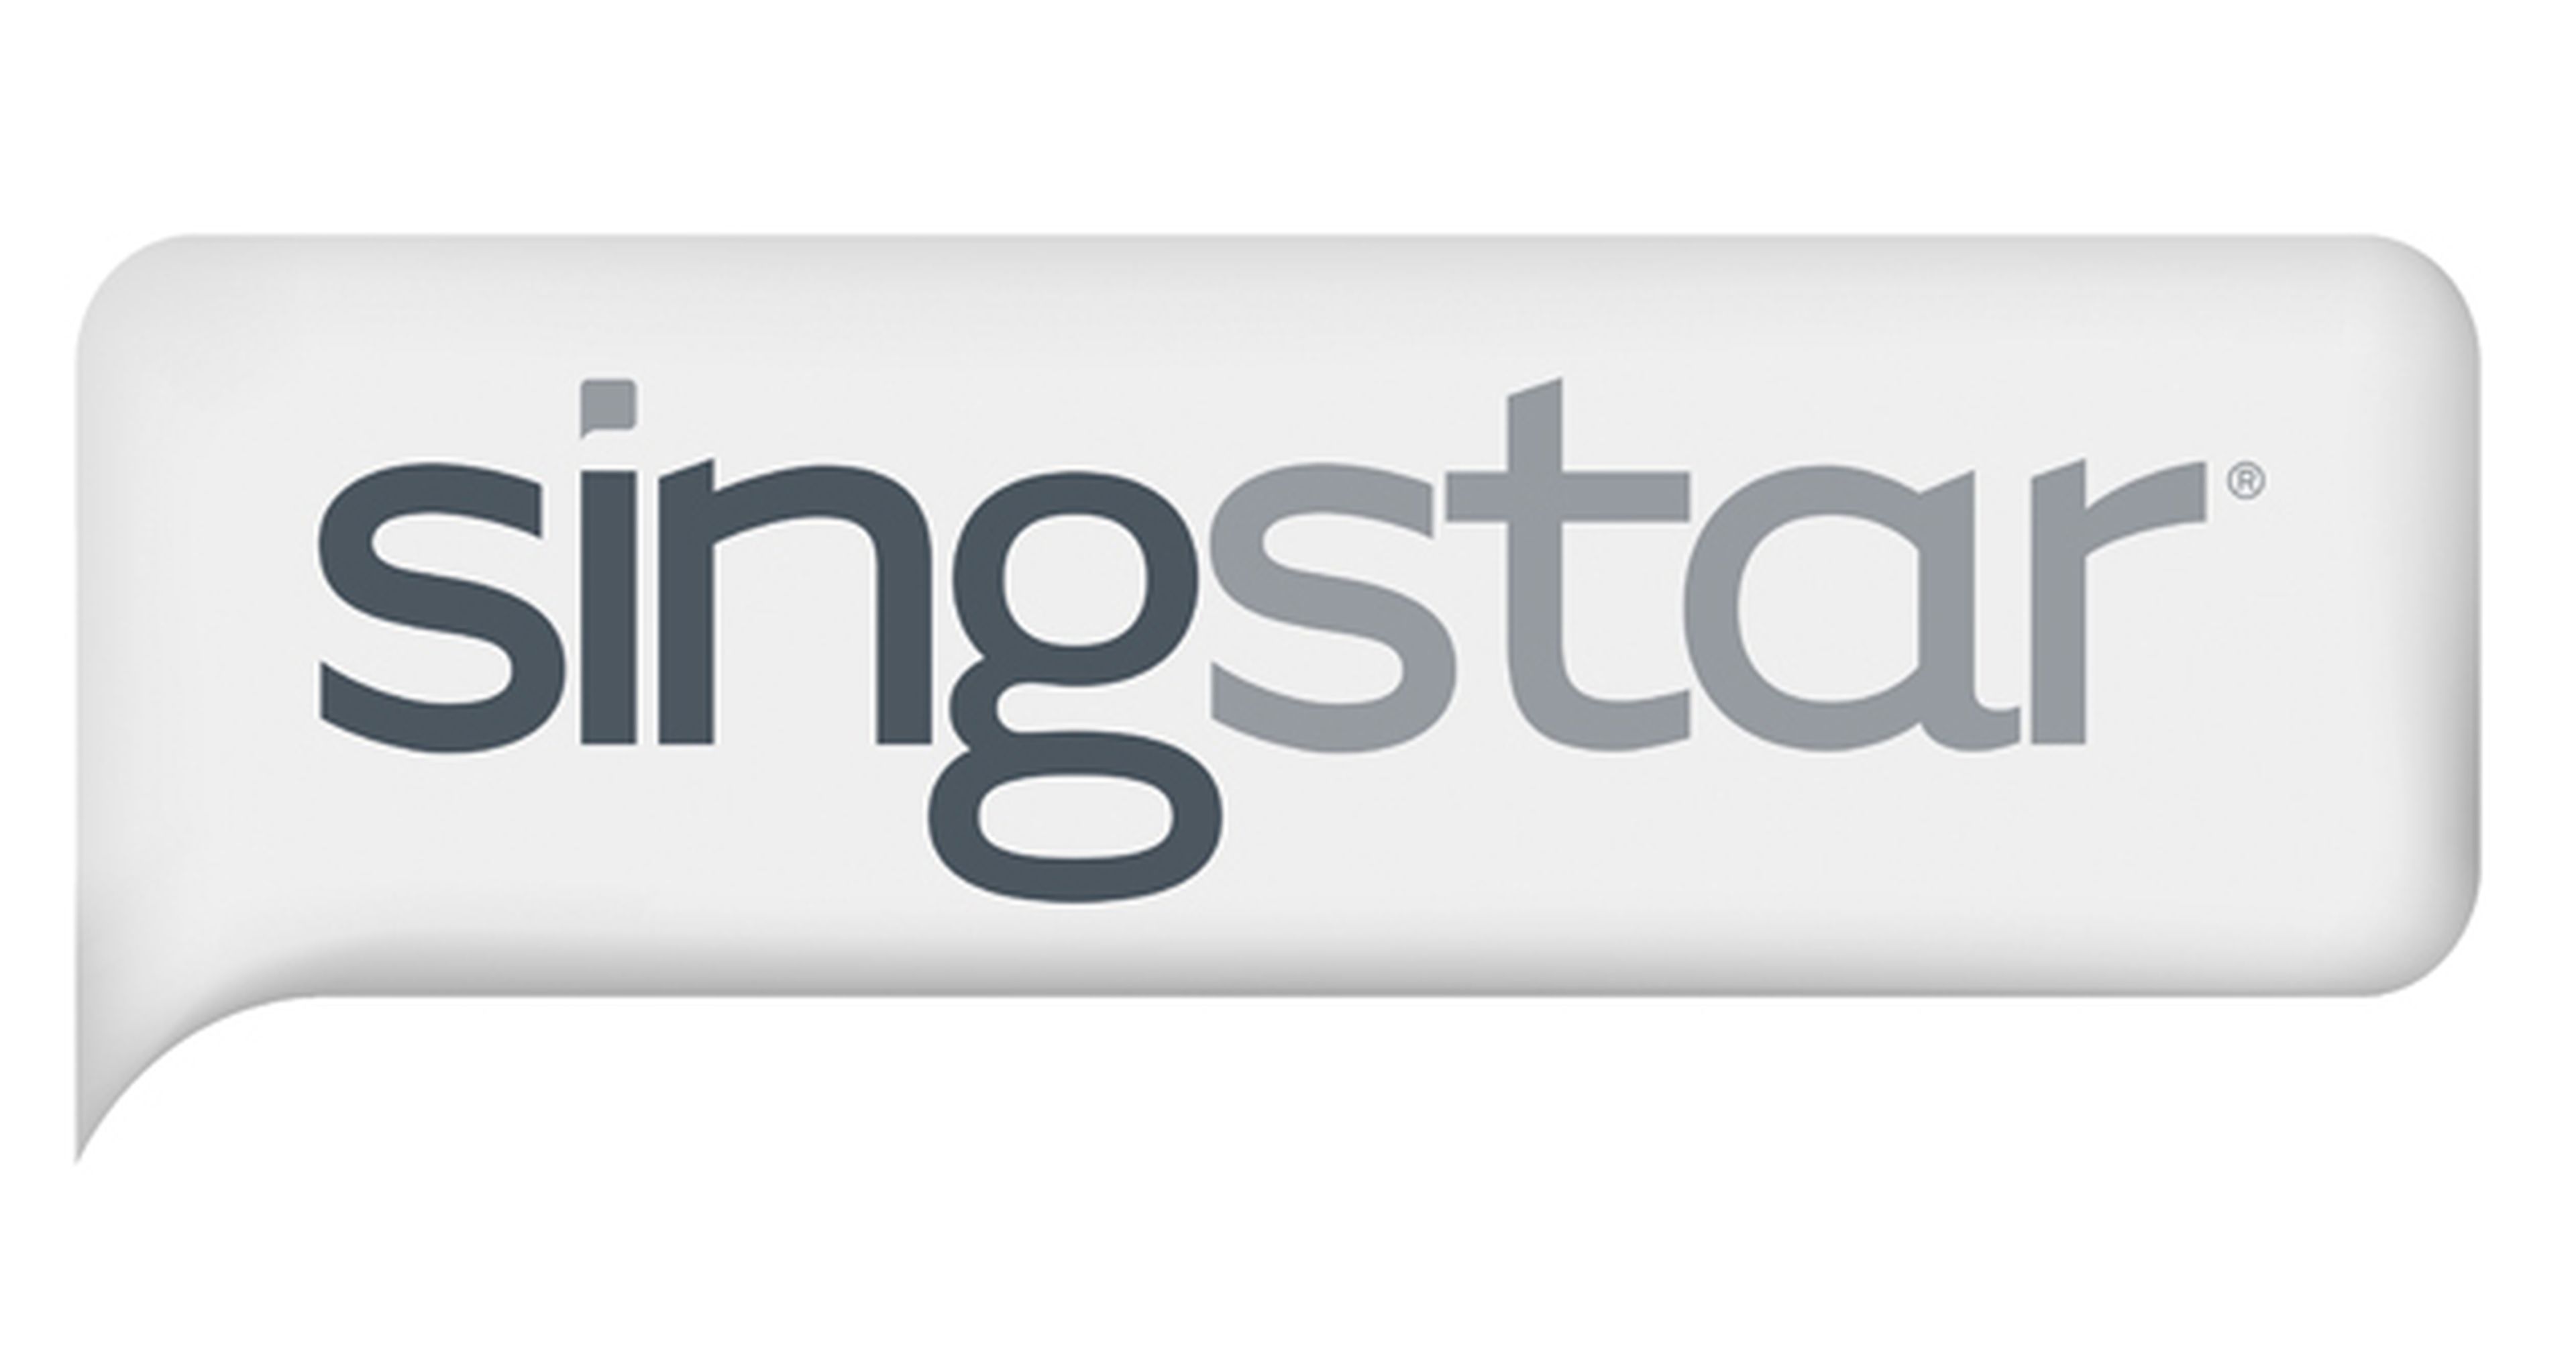 Sony planea lanzar un reboot de SingStar como free2play